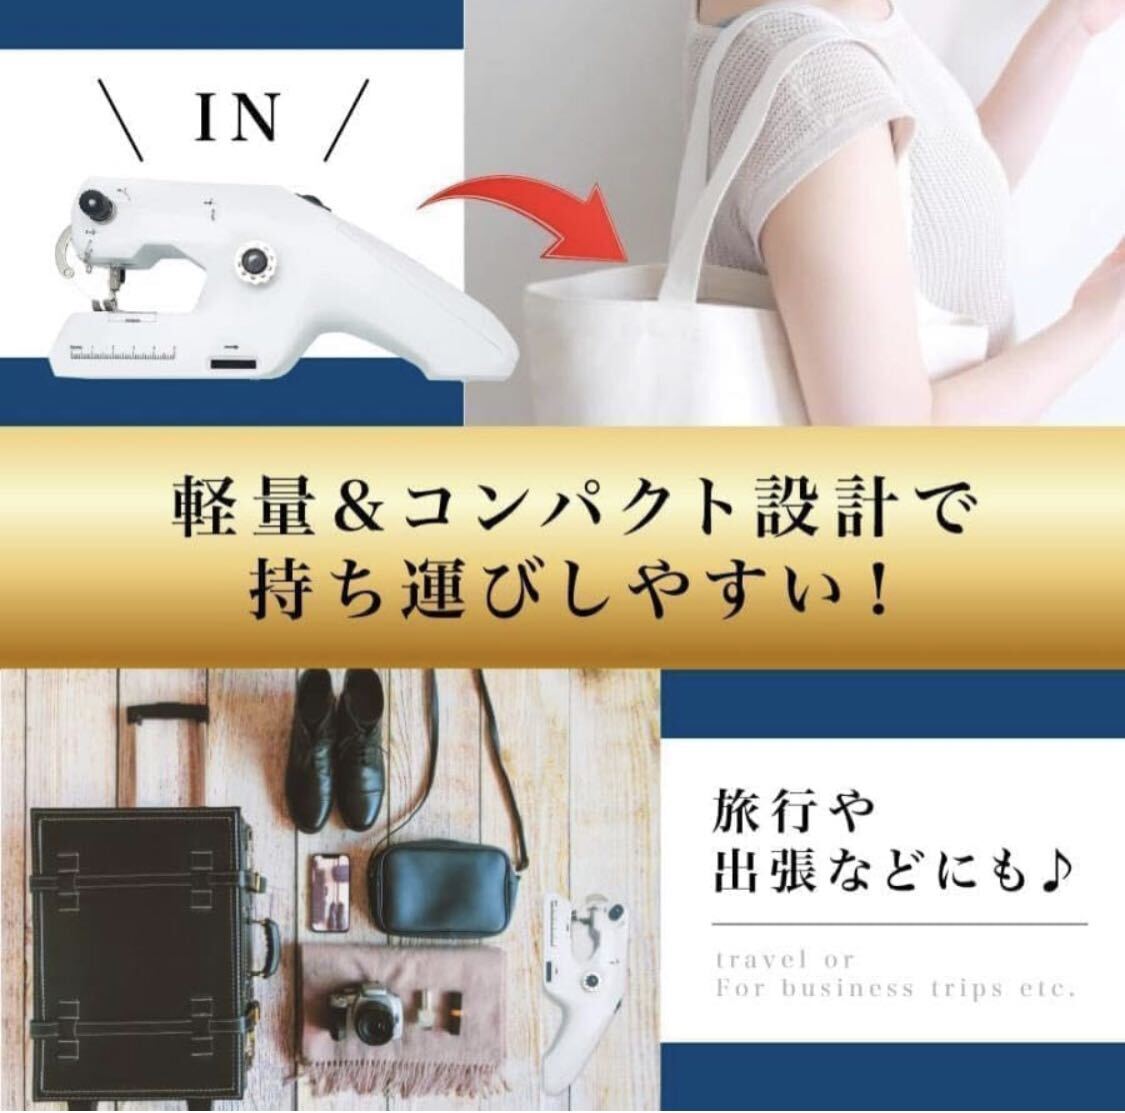 ハンドミシン BB1152ズルすぎるハンディミシン片手で縫える 日本語説明書付き初心者にも超簡単 Yosishop 電動 小型ハンディ コンパクト_画像4